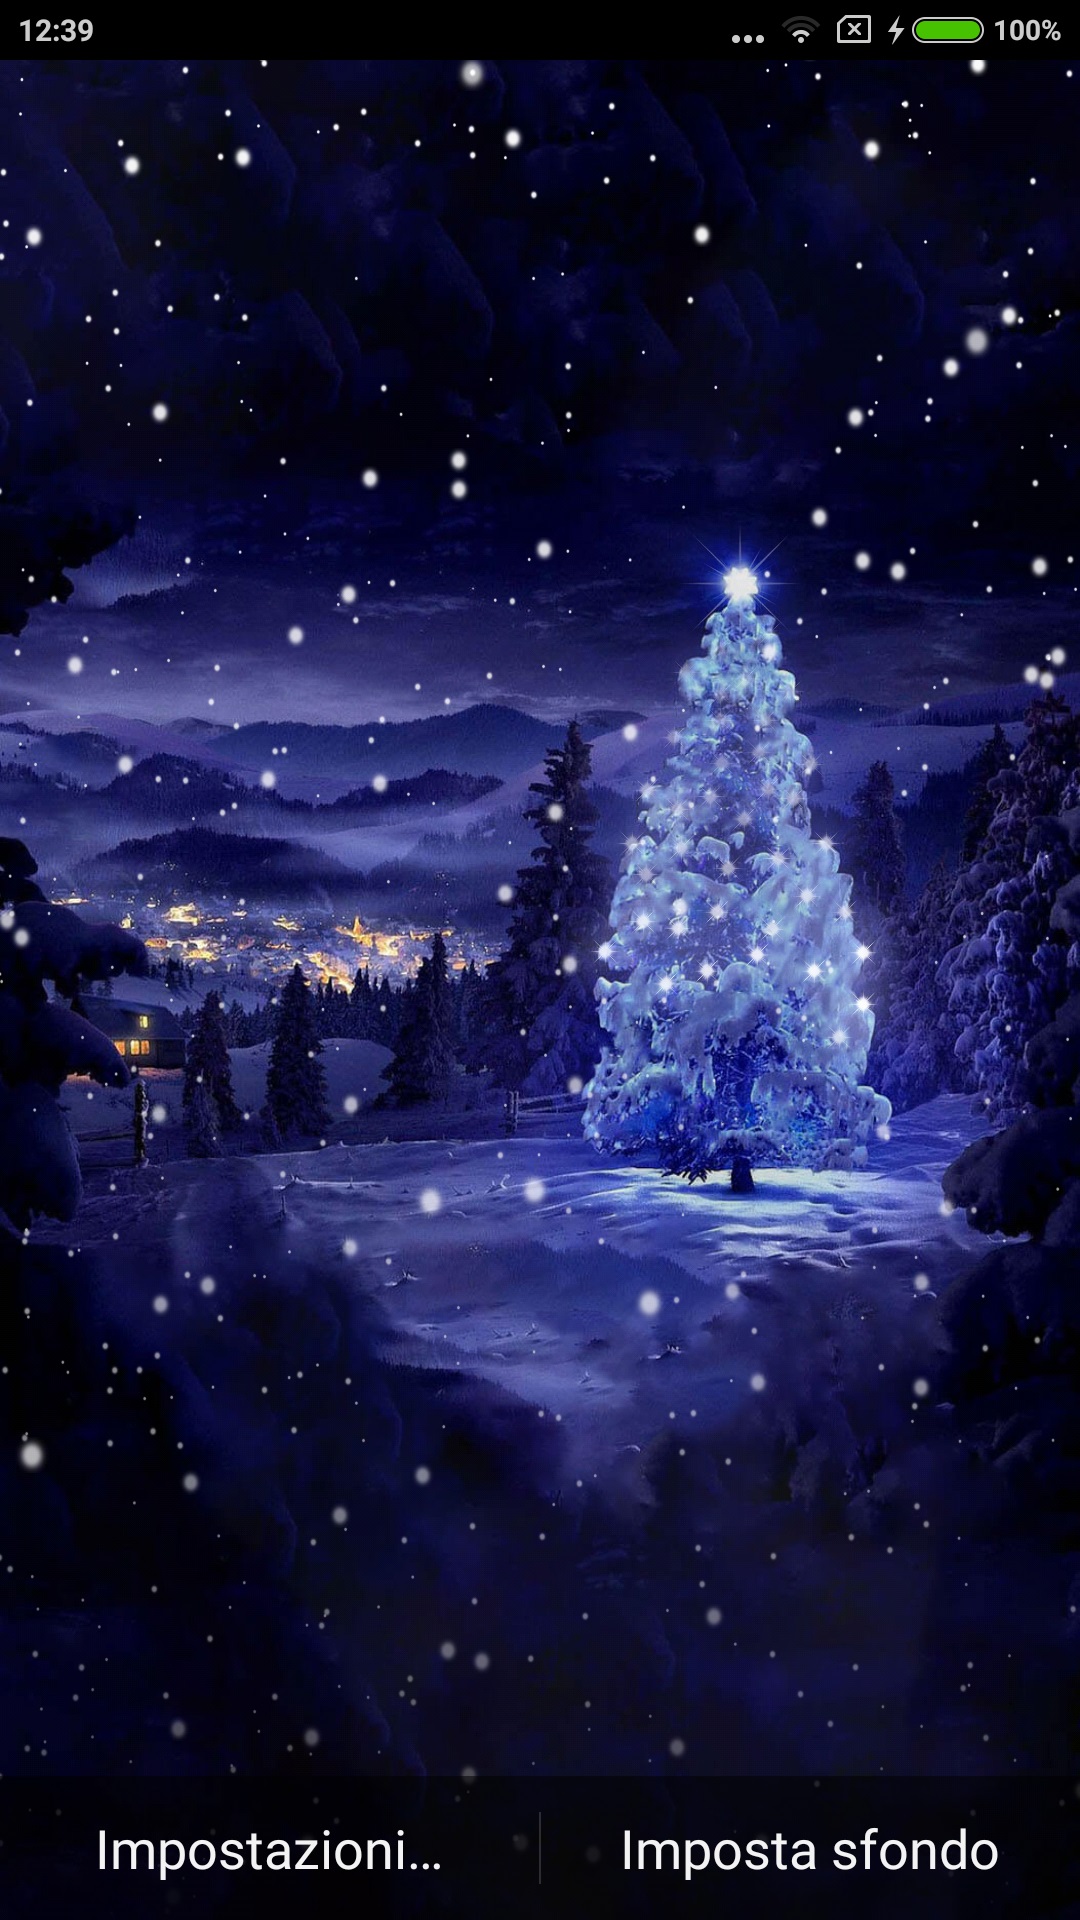 Sfondi Alberi Natalizi.Christmas Tree Offre Uno Sfondo Animato Personalizzabile Con L Albero Di Natale Innevato